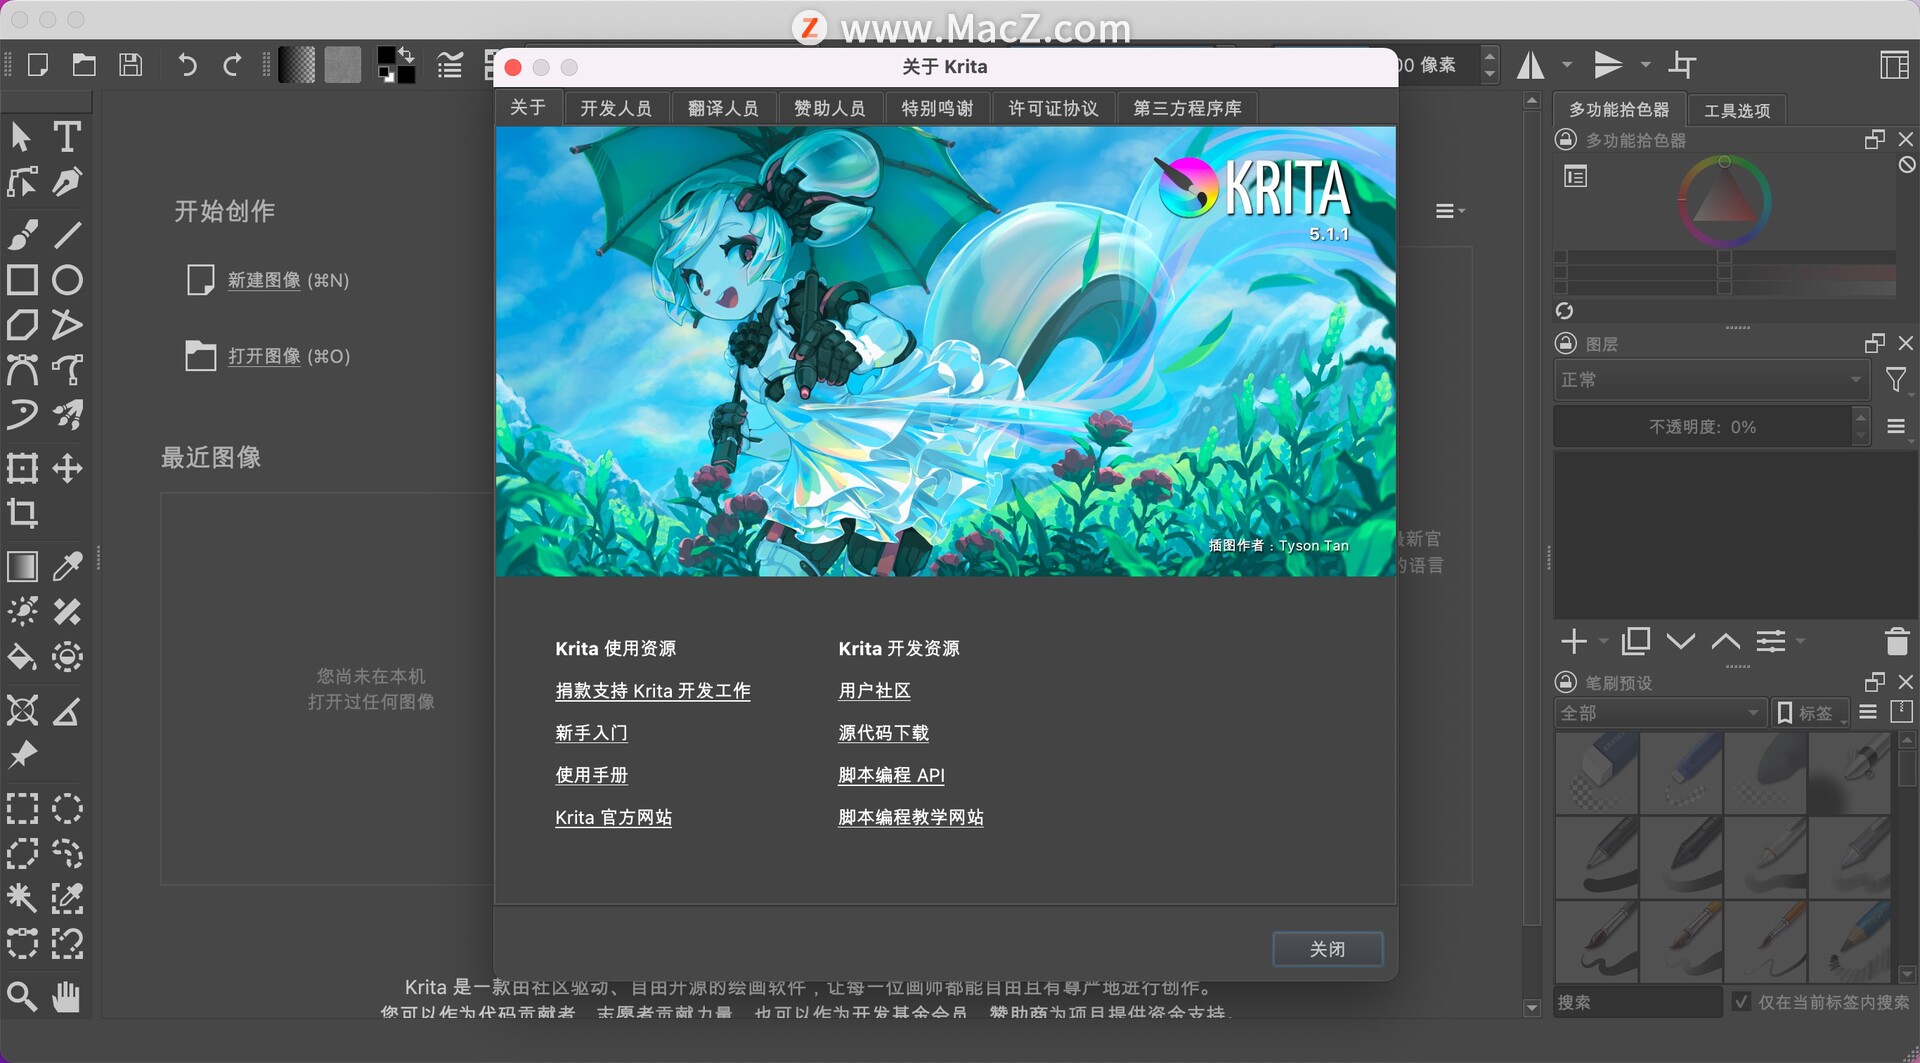 krita绘图 Mac版-krita for Mac(绘画软件)- Mac下载插图1